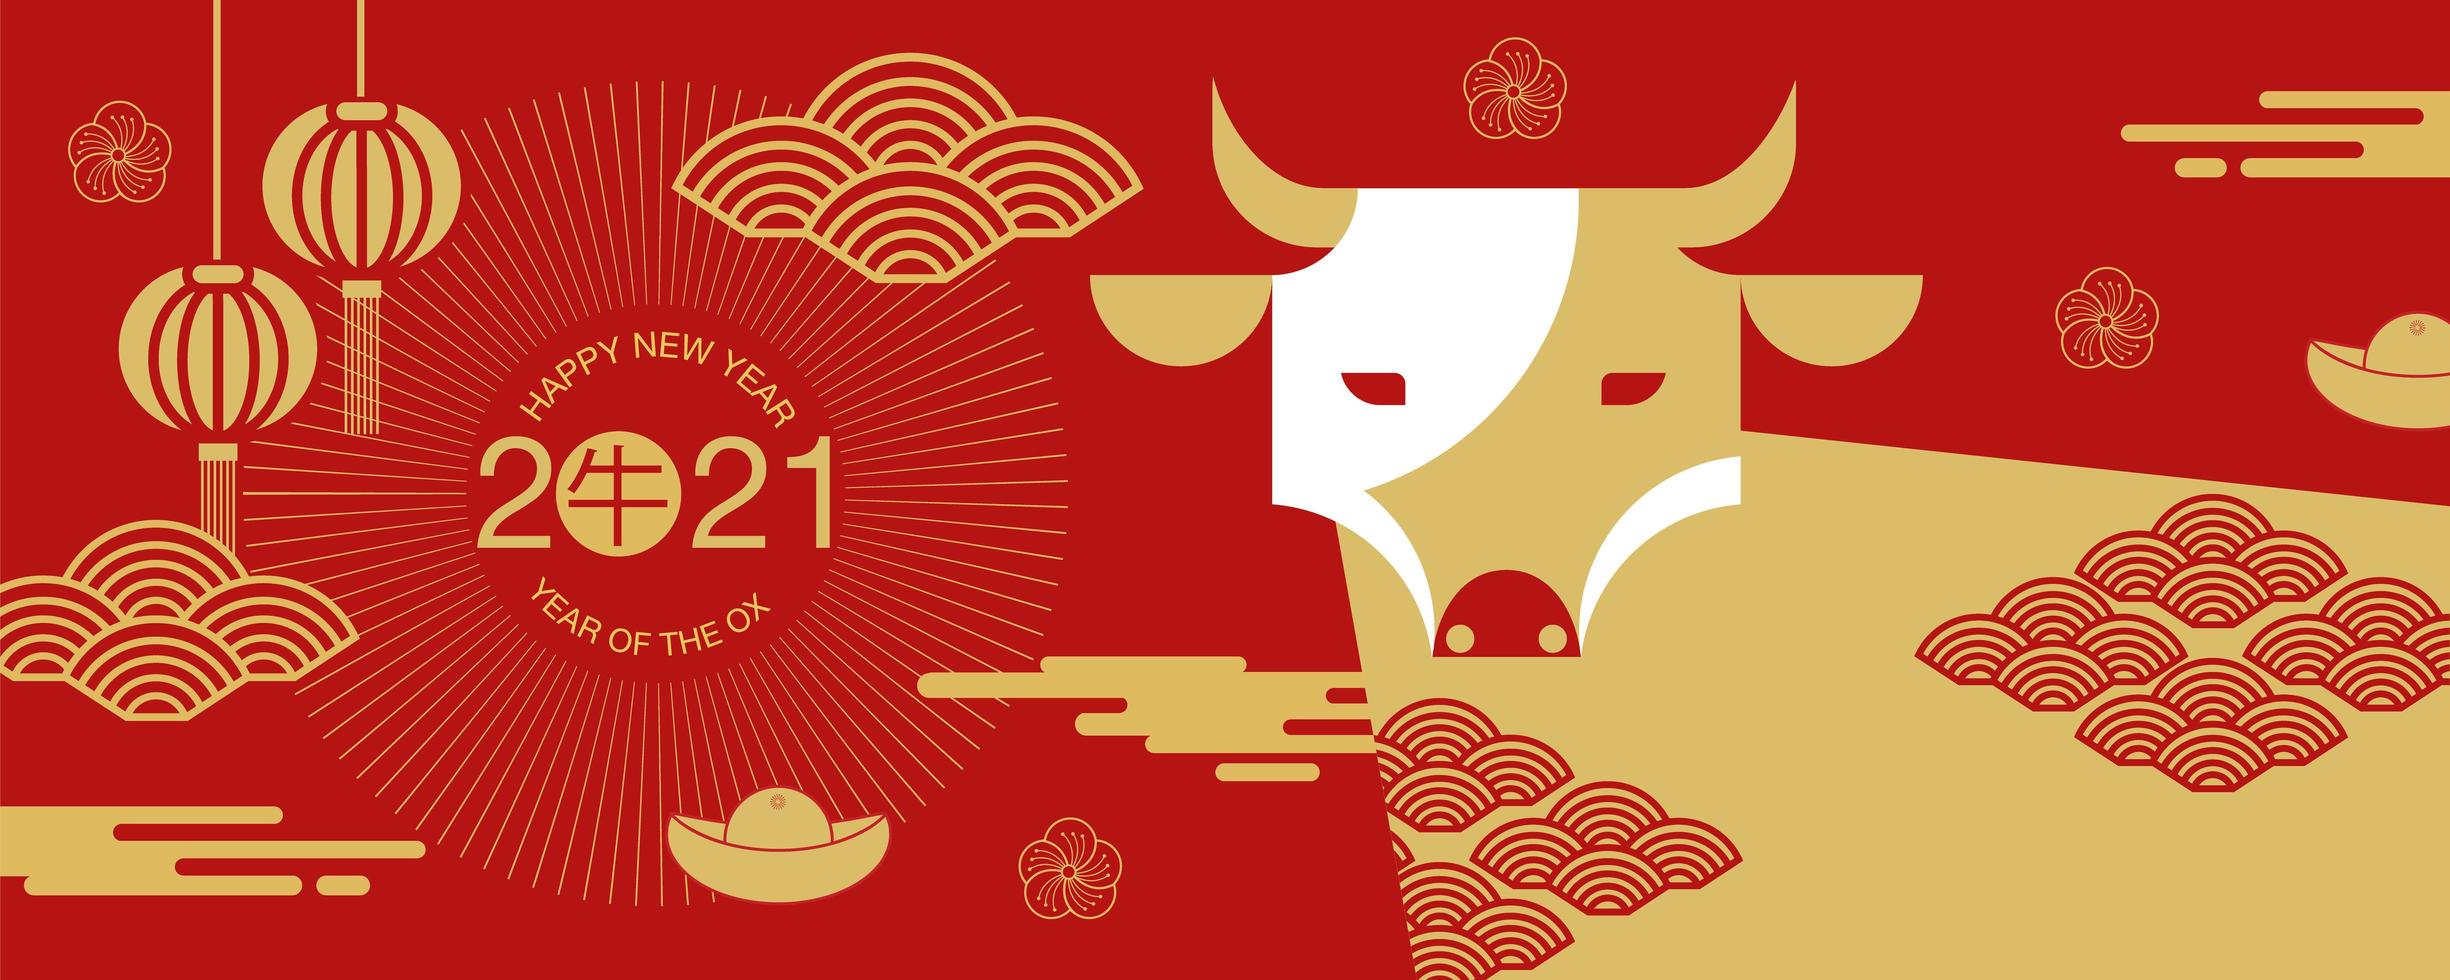 Bannière du nouvel an chinois 2021 avec vue de face de boeuf vecteur